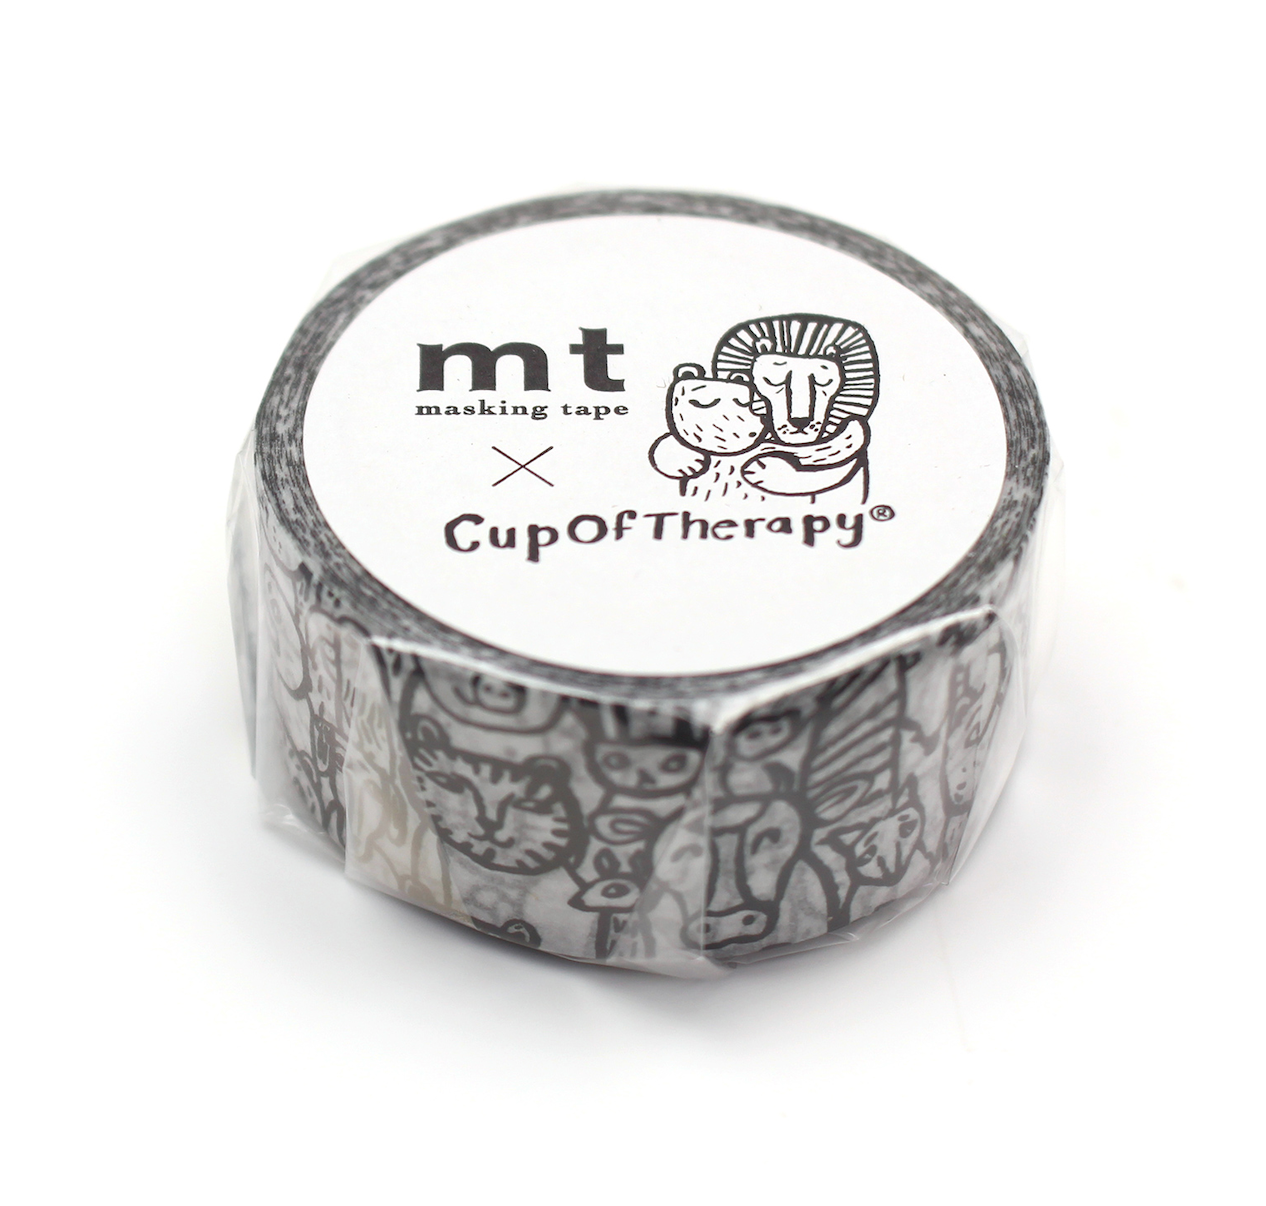 MT Masking Tape x MATT - Cup of Therapy Animals (MTMATT 04Z)